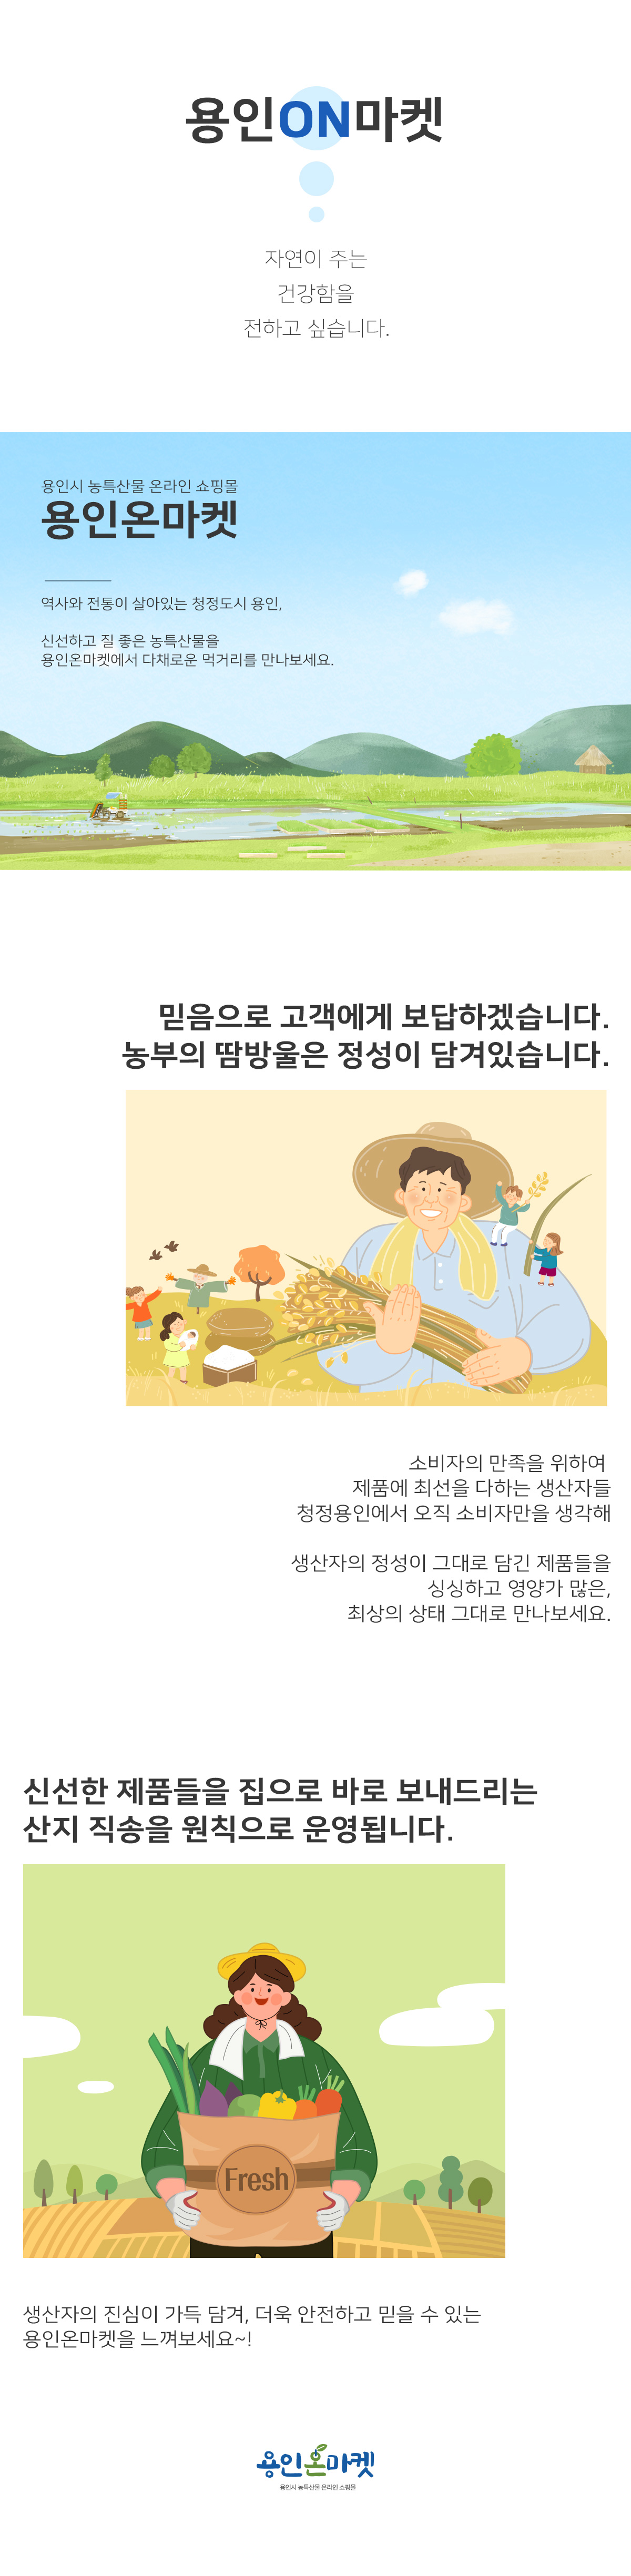 용인온마켓 소개